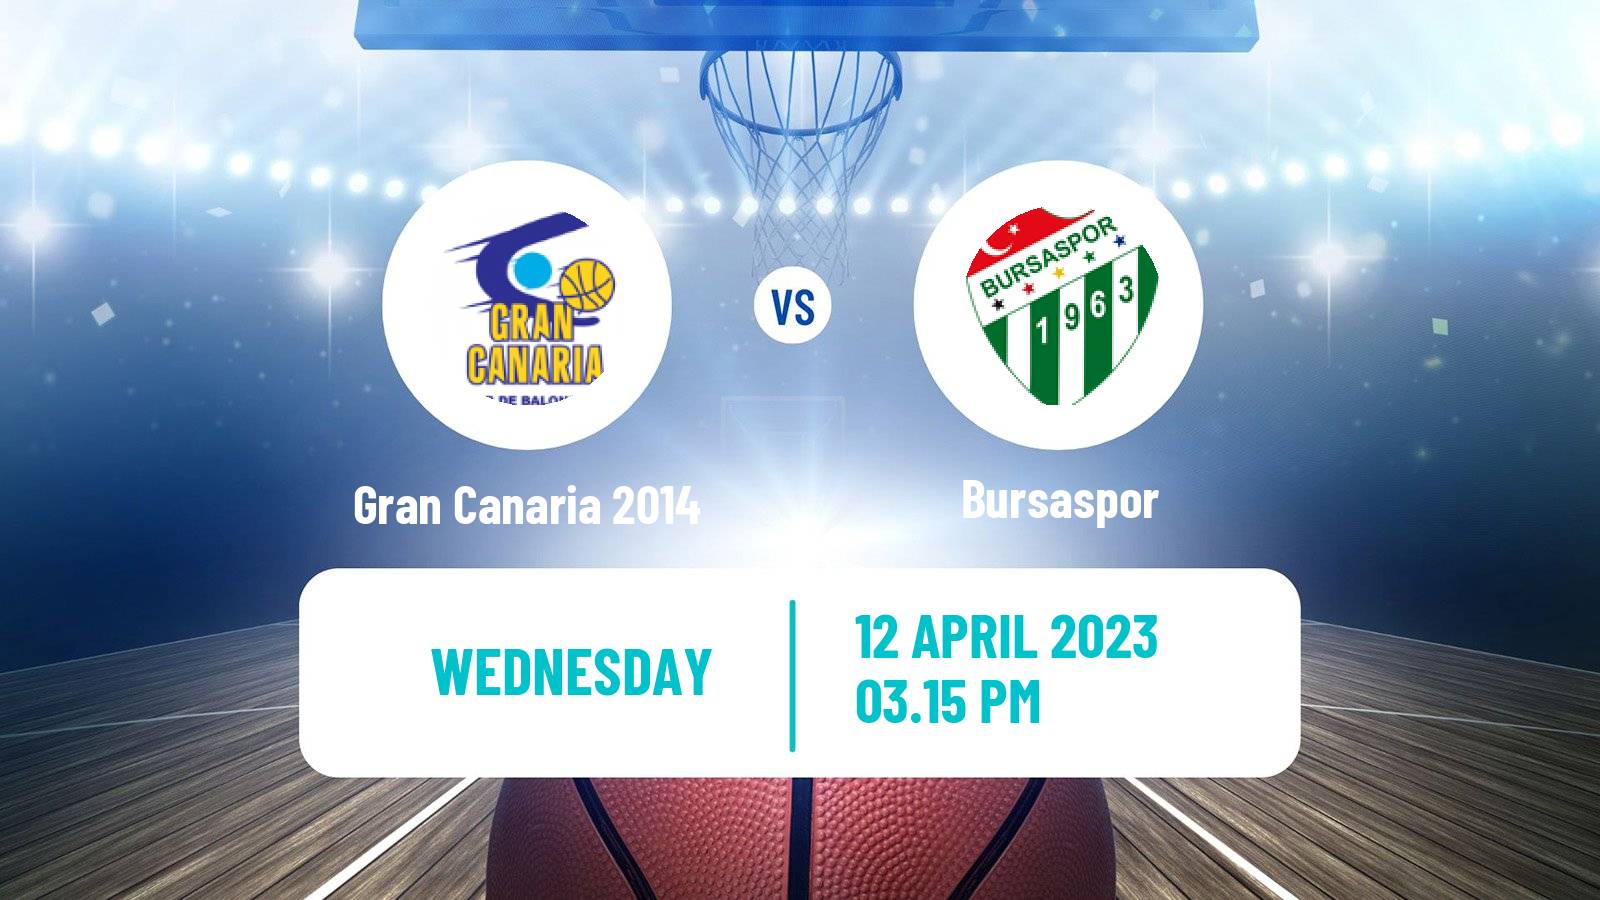 Basketball Eurocup Gran Canaria 2014 - Bursaspor